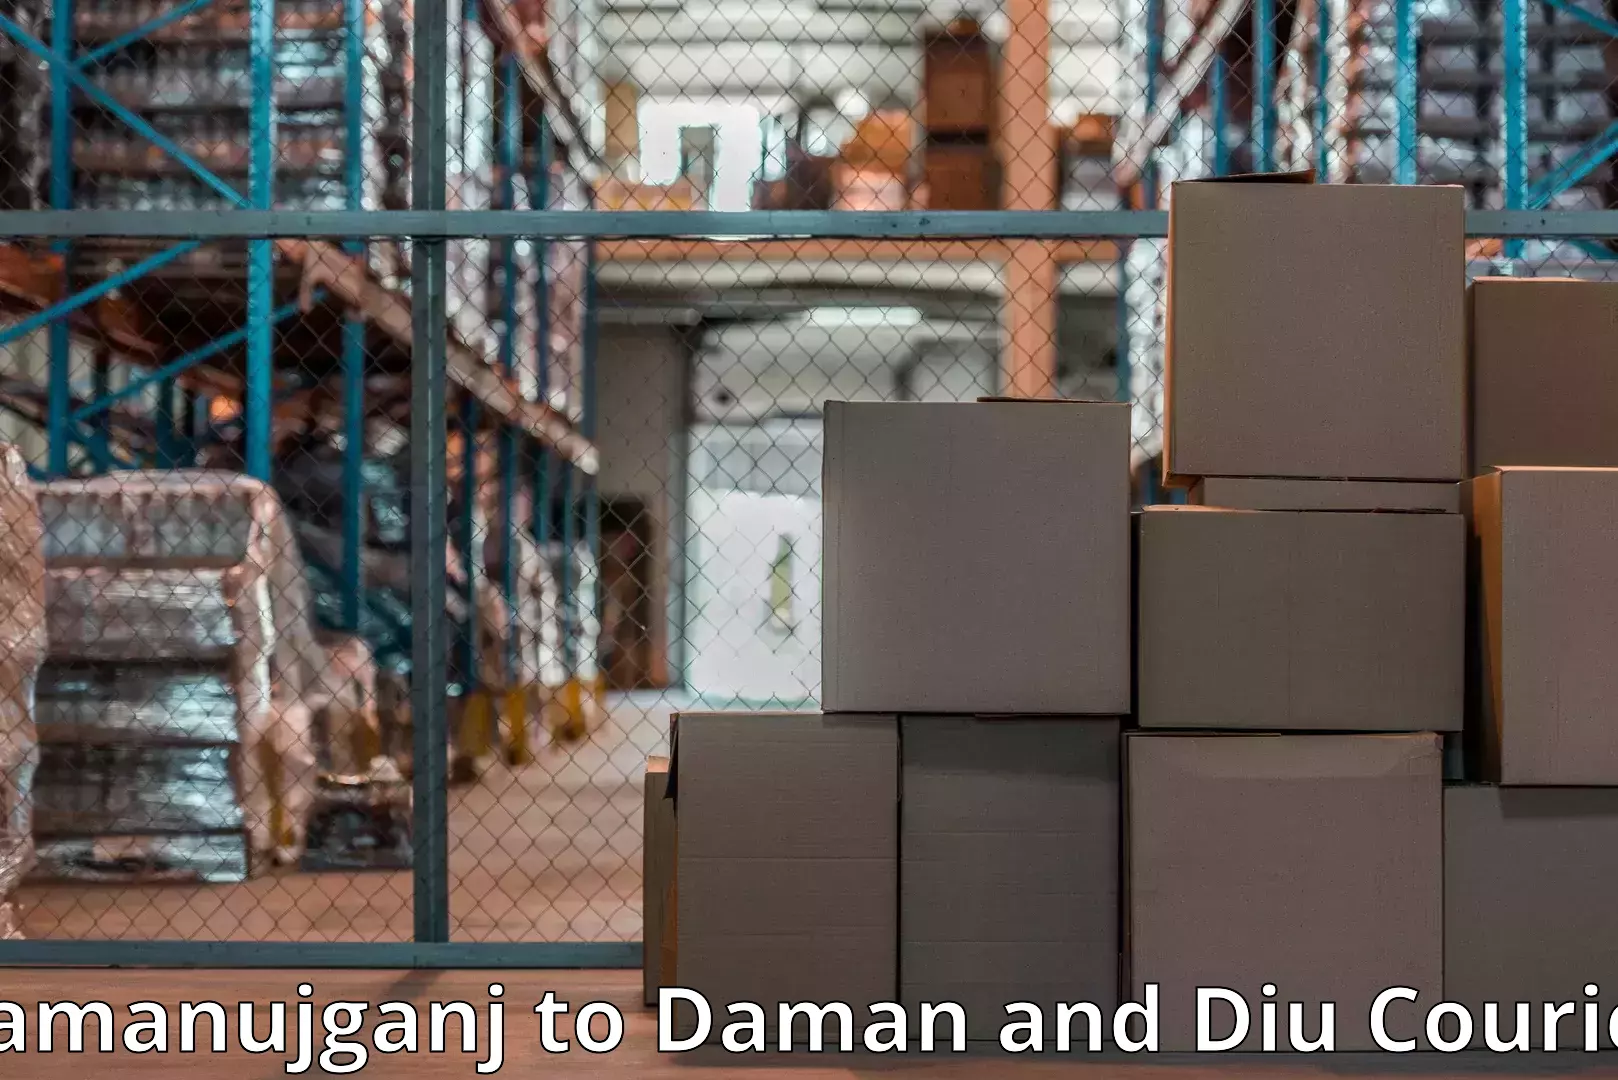 Professional moving company Ramanujganj to Daman and Diu